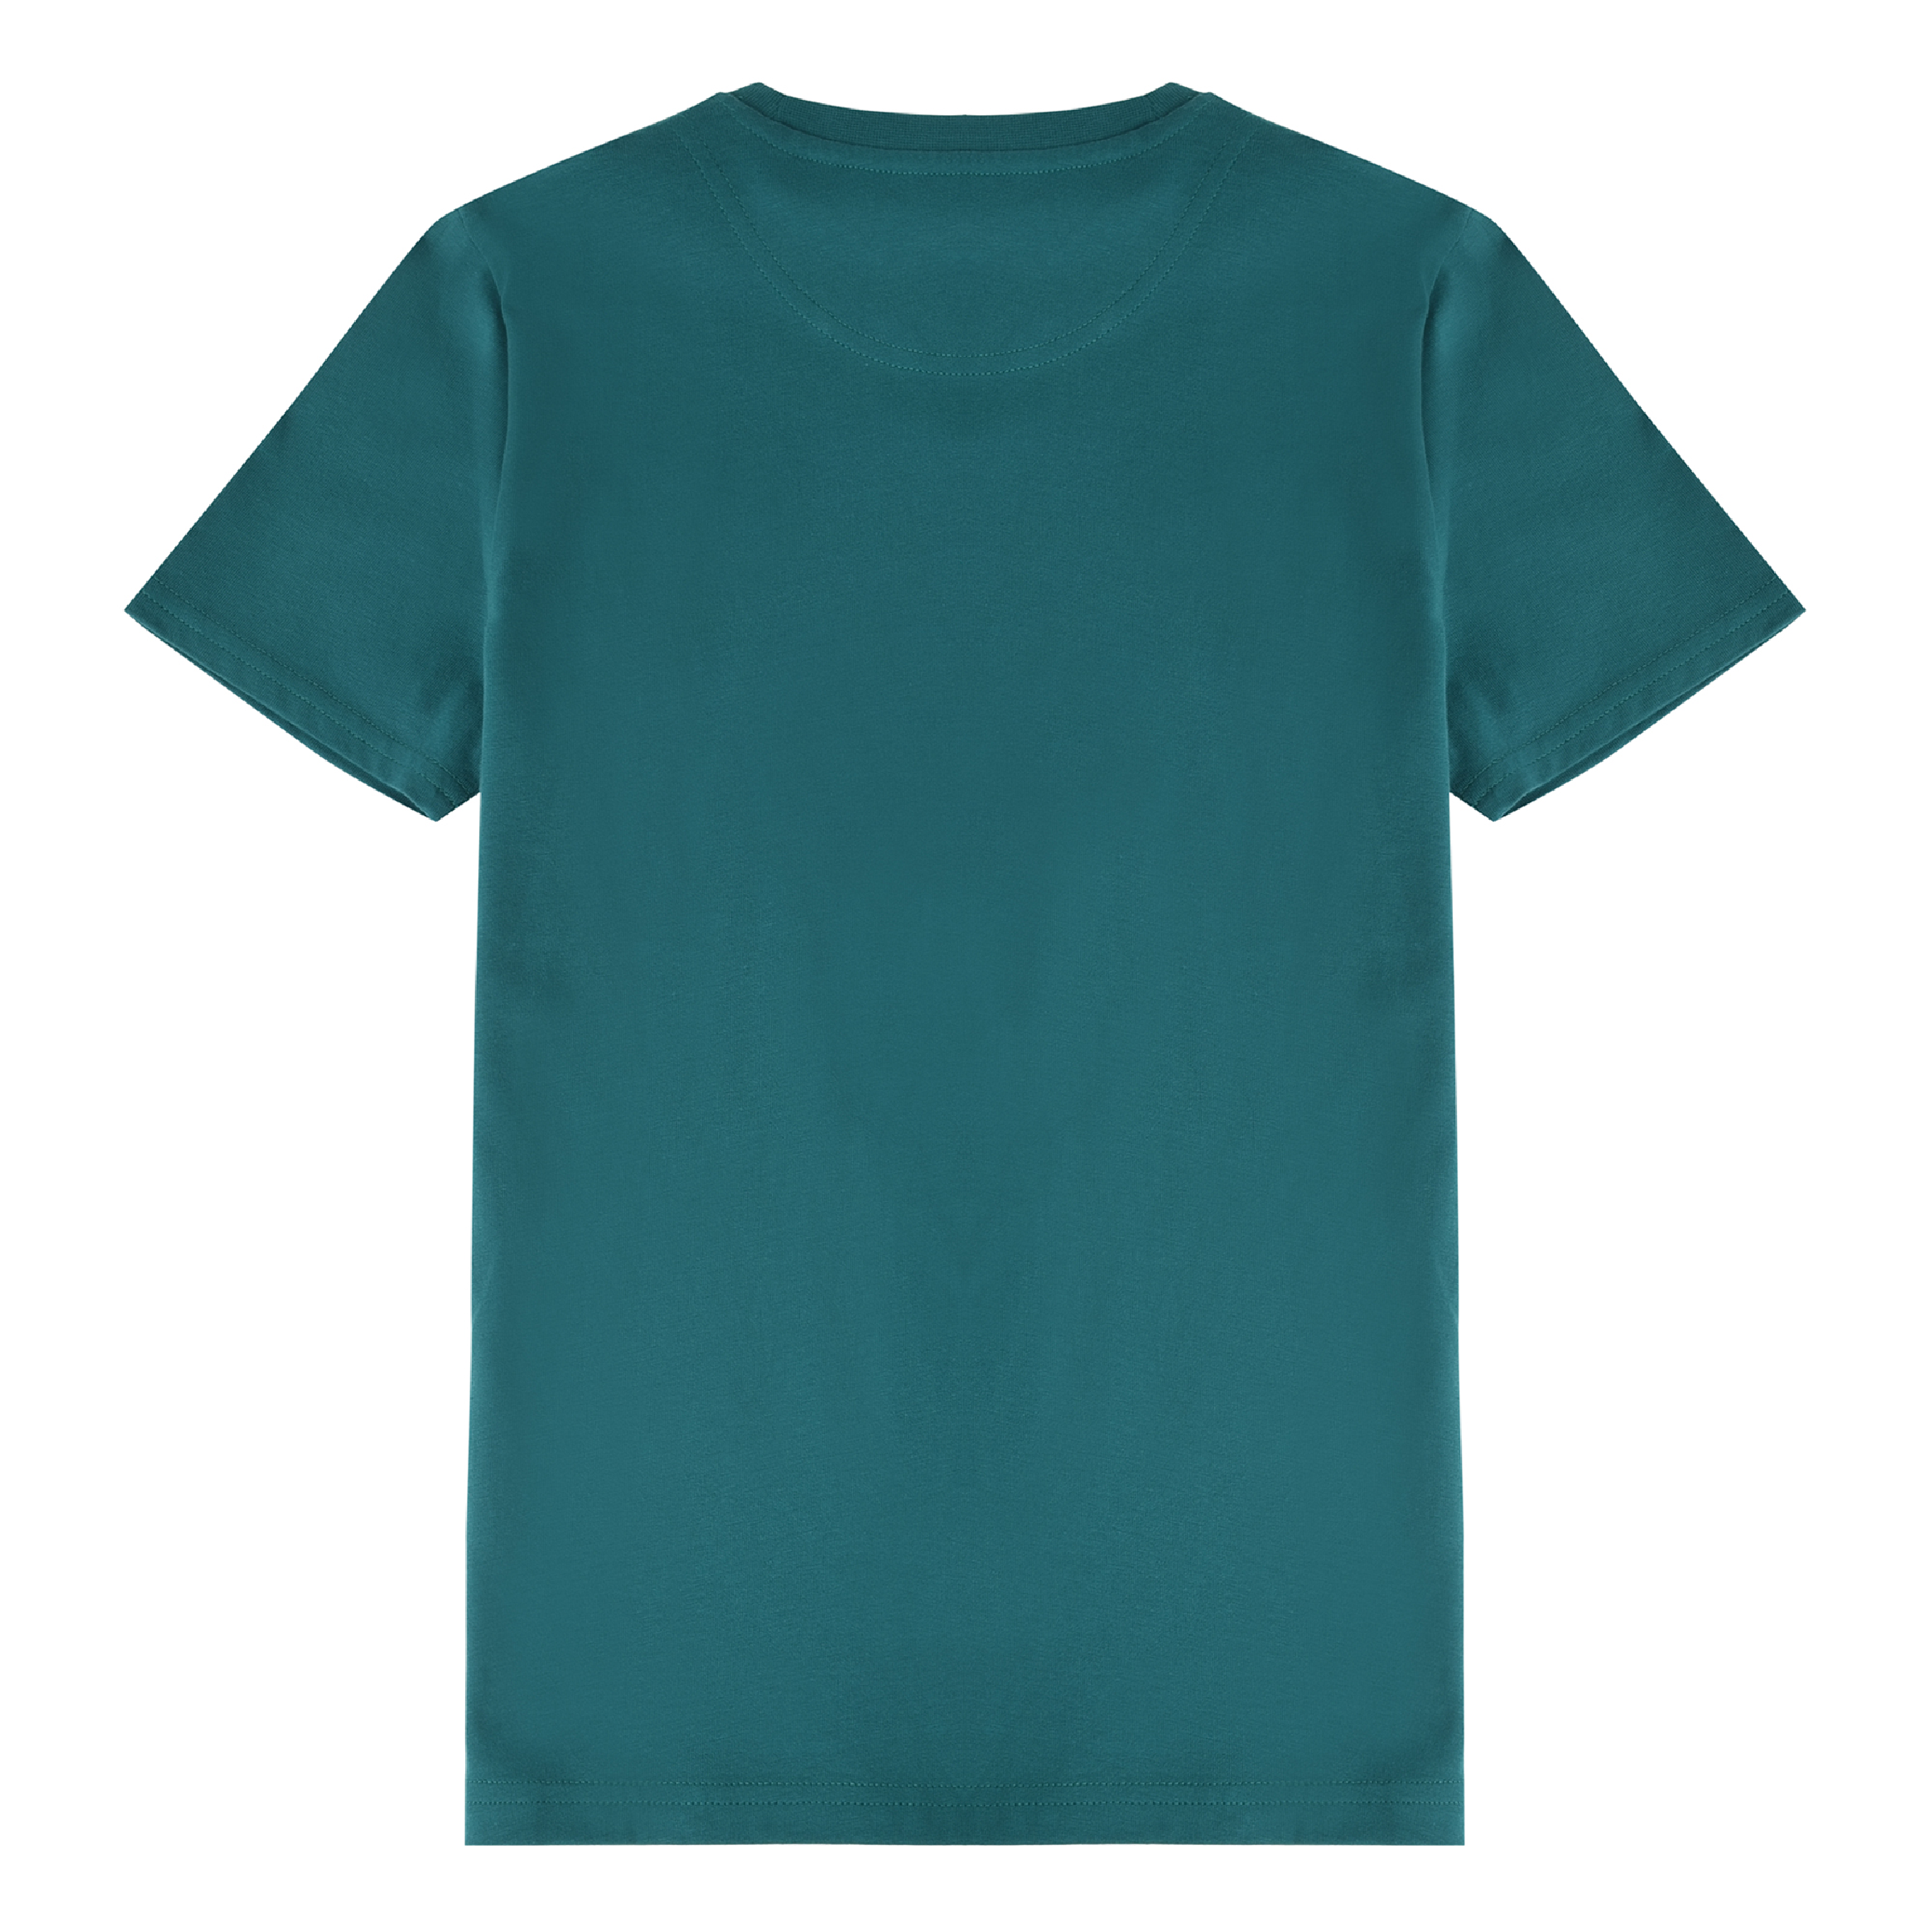 Jongens Classic T-Shirt Storm van Lyle & Scott in de kleur Storm in maat 170-176.